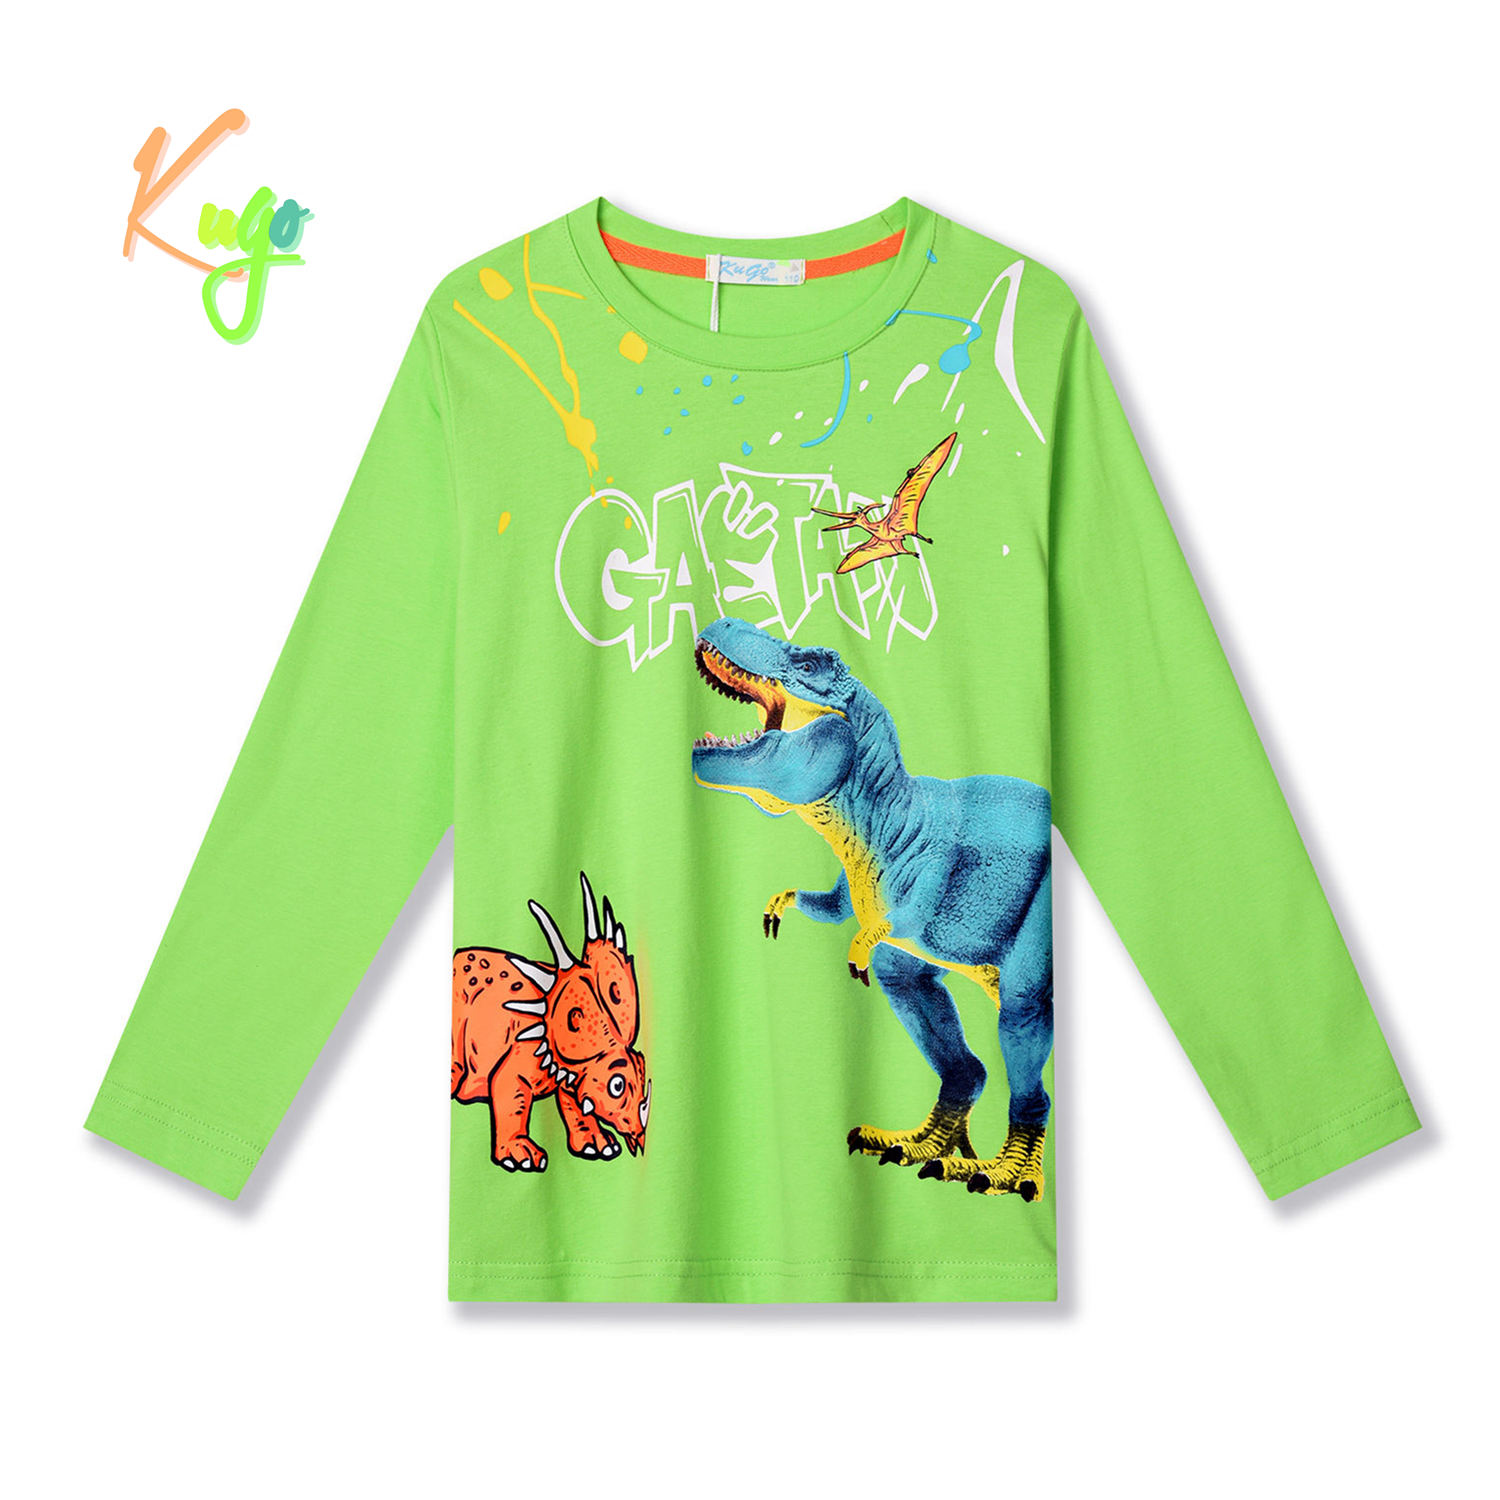 Chlapecké tričko - KUGO HC9307, zelinkavá Barva: Zelená, Velikost: 116